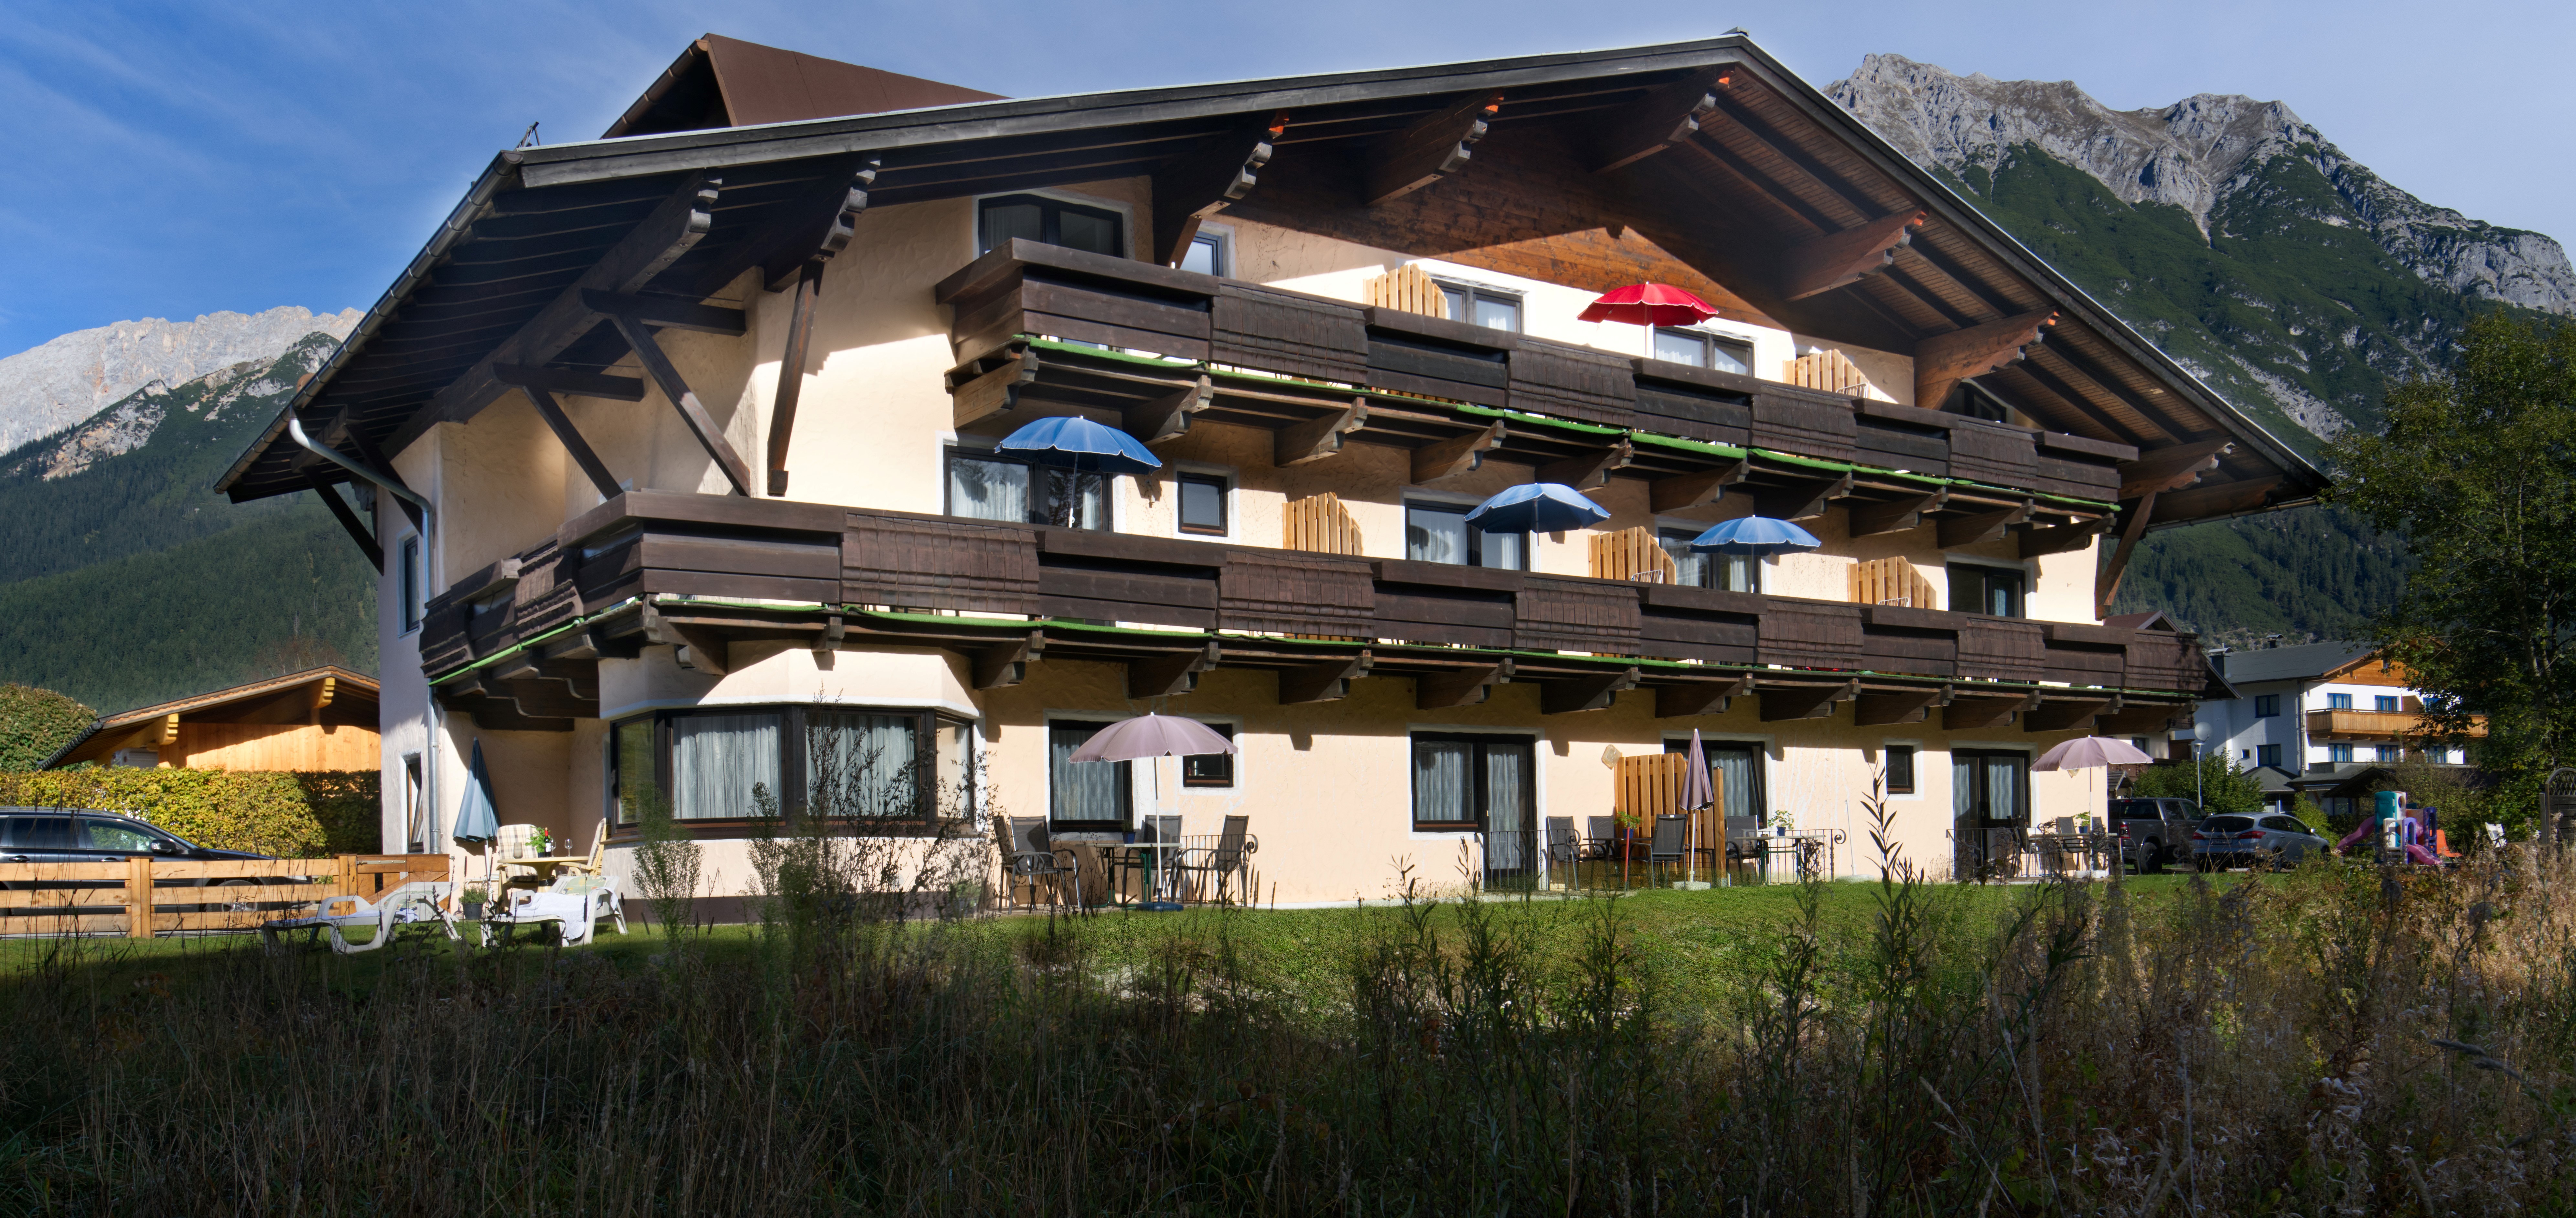 Appartementenhuis Ostbacher Stern in Tirol Oostenrijk (Combi type C en Slaapkamer E) met 2 slaapkamers en badkamers